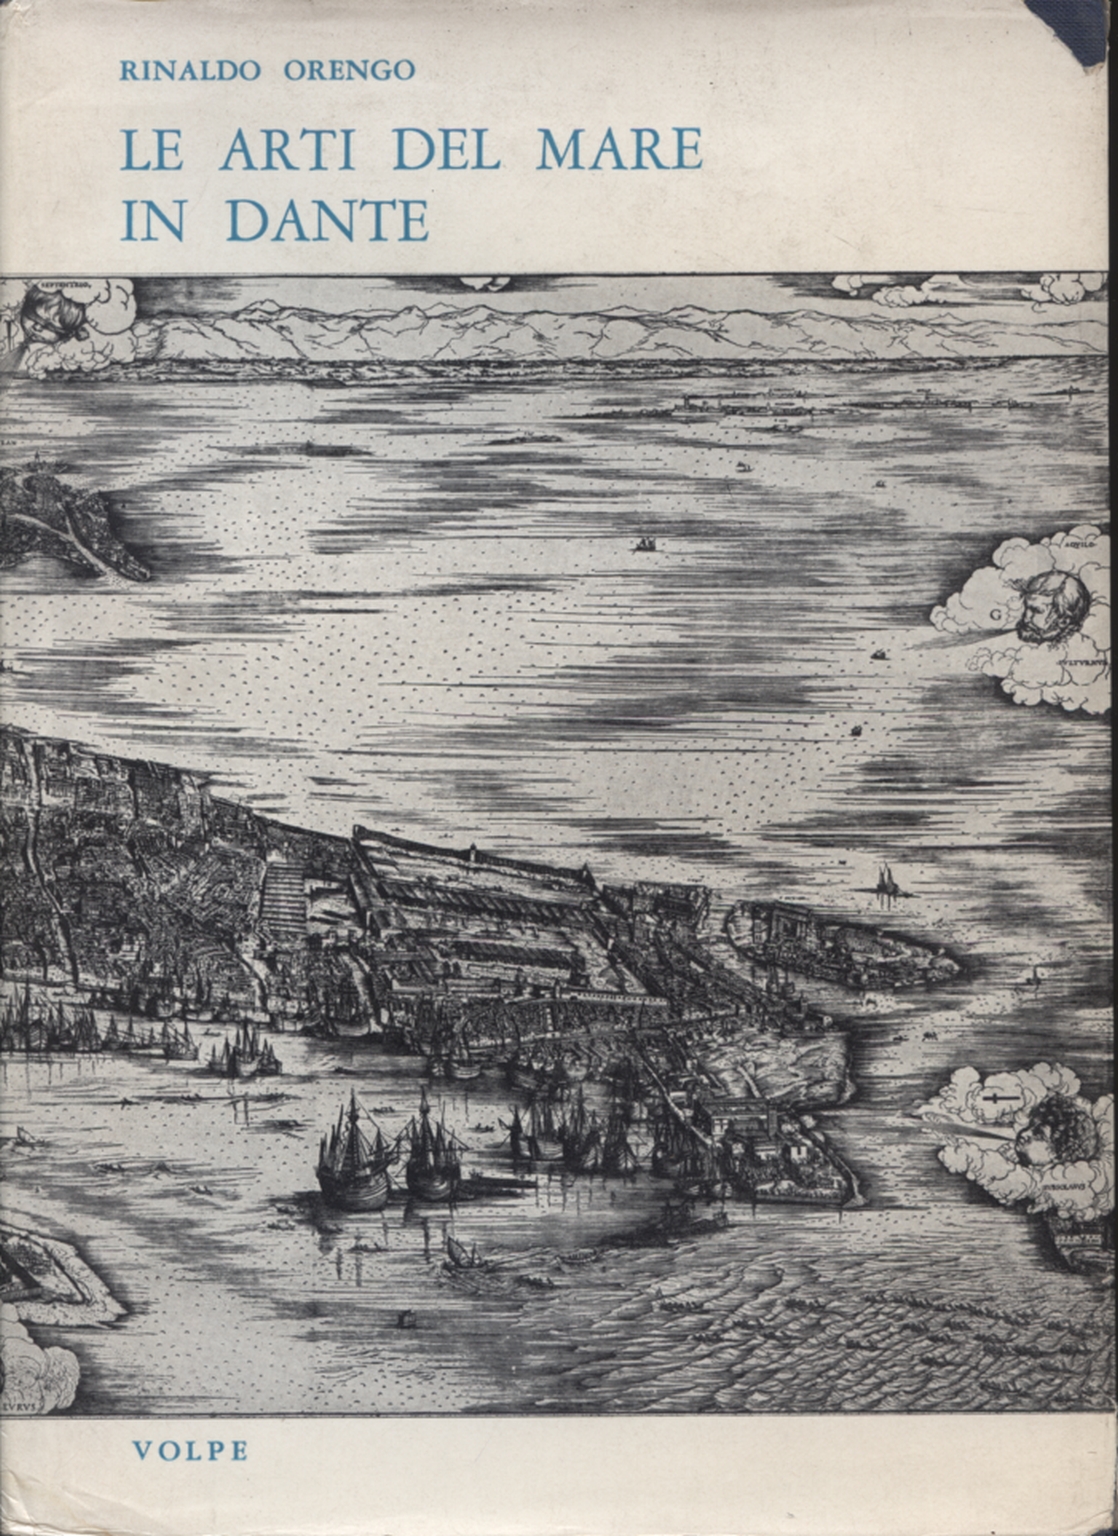 Les arts de la mer chez Dante, Rinaldo Orengo